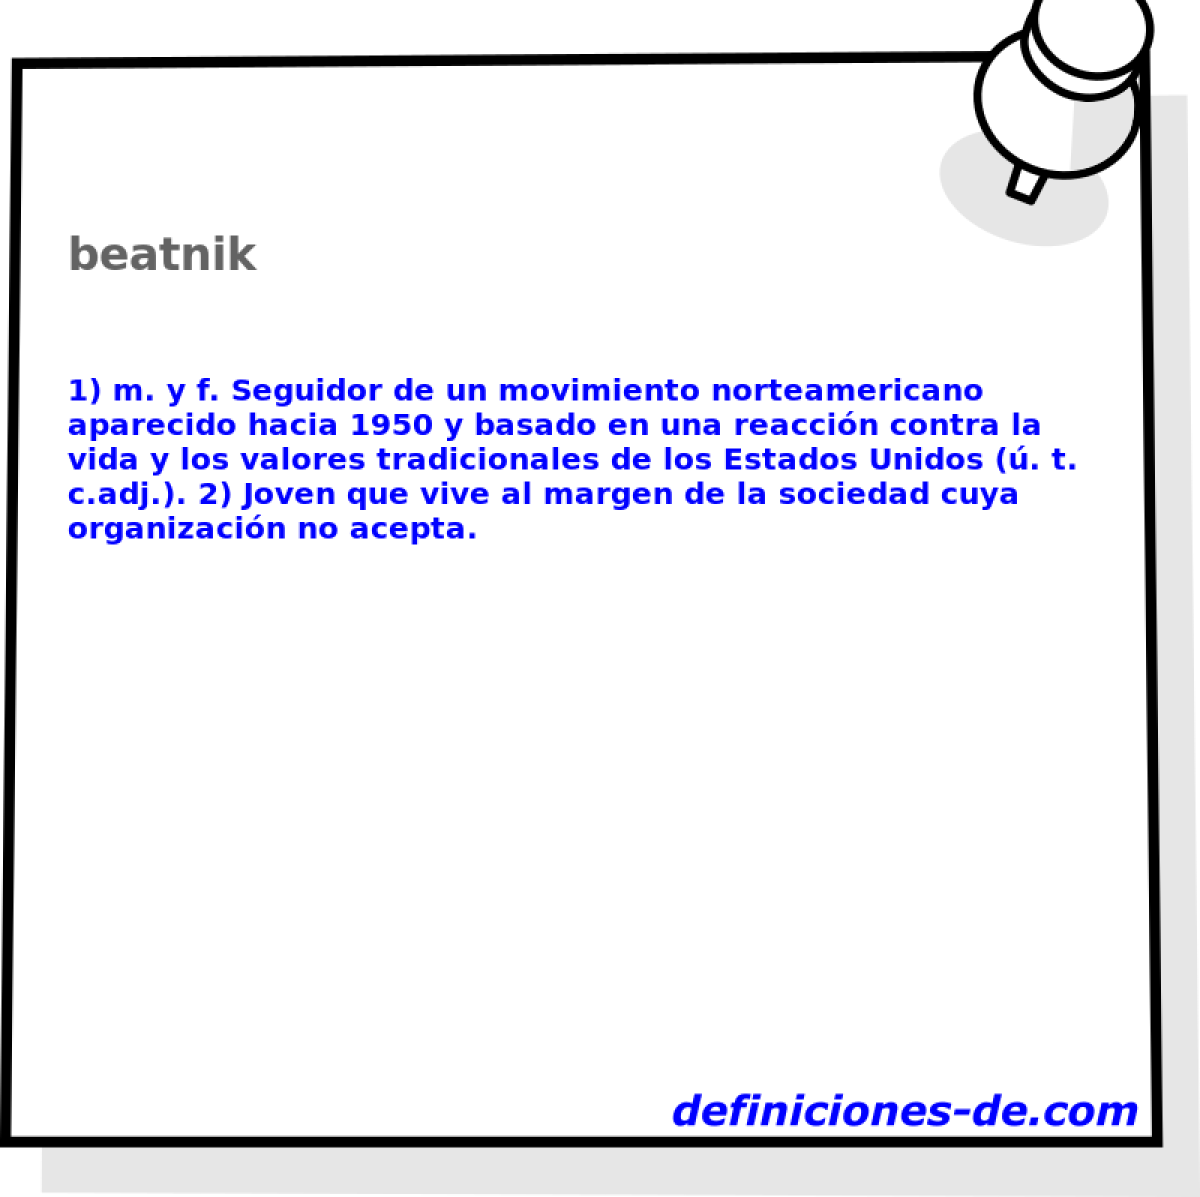 beatnik 